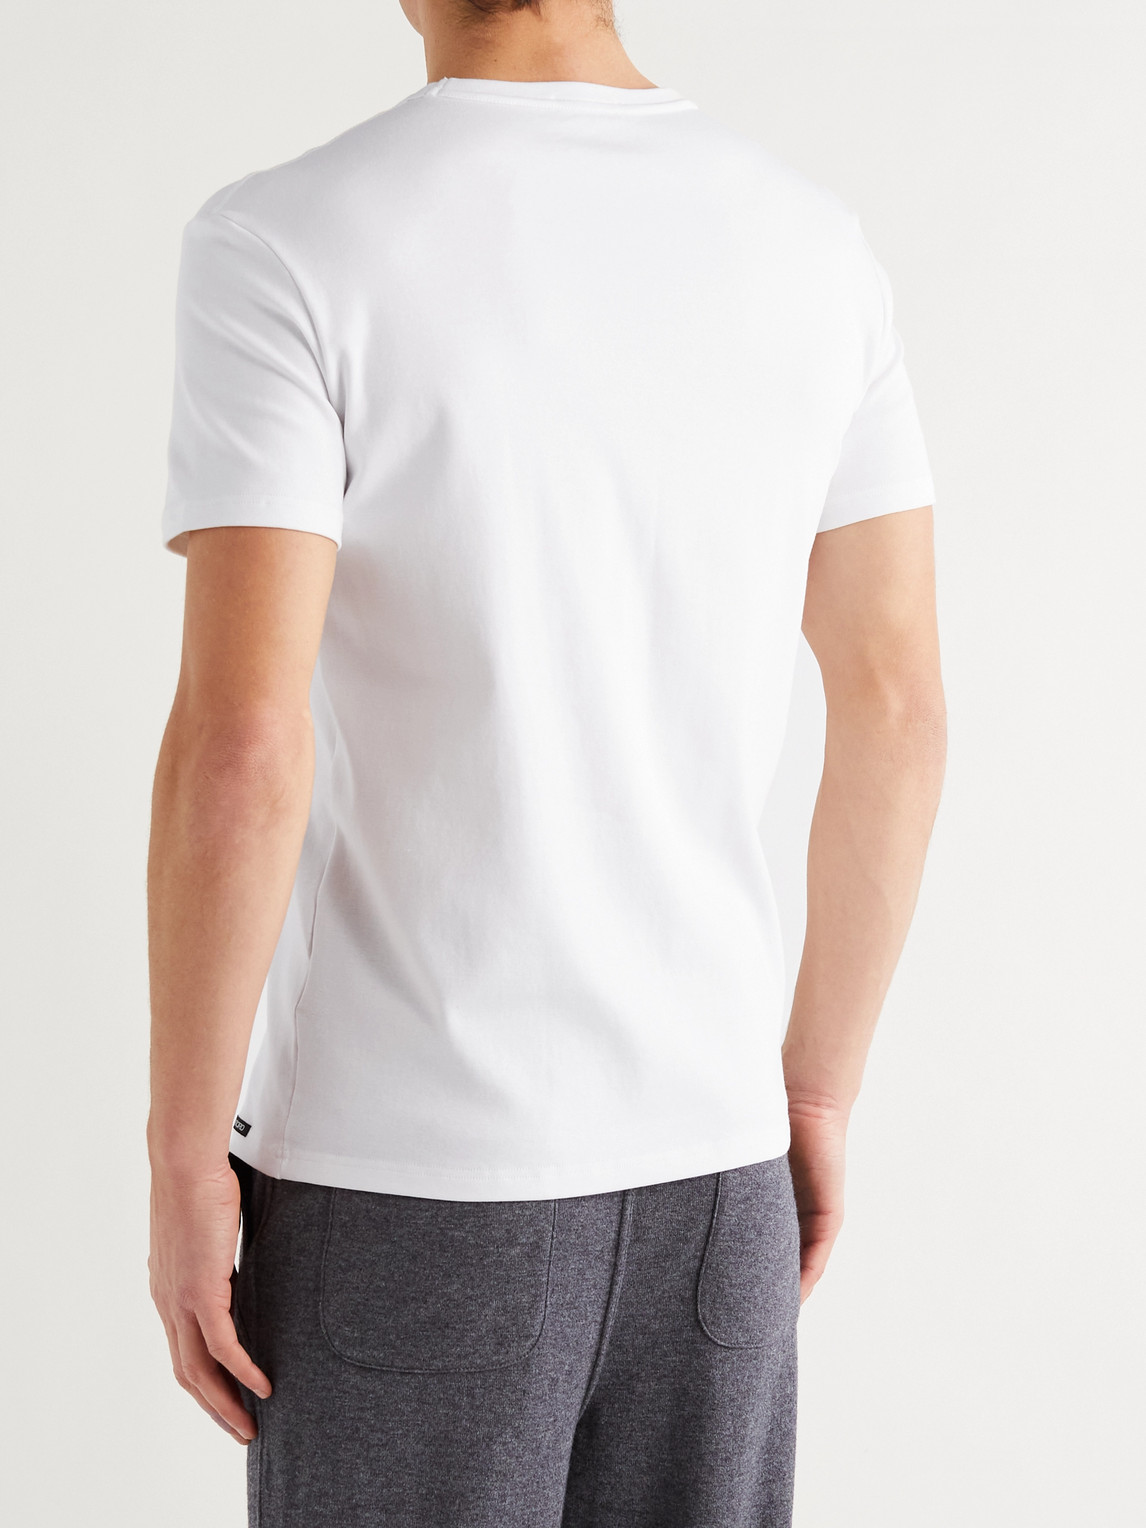 Tom Ford V-neck Short Sleeves T-shirt In White | ModeSens